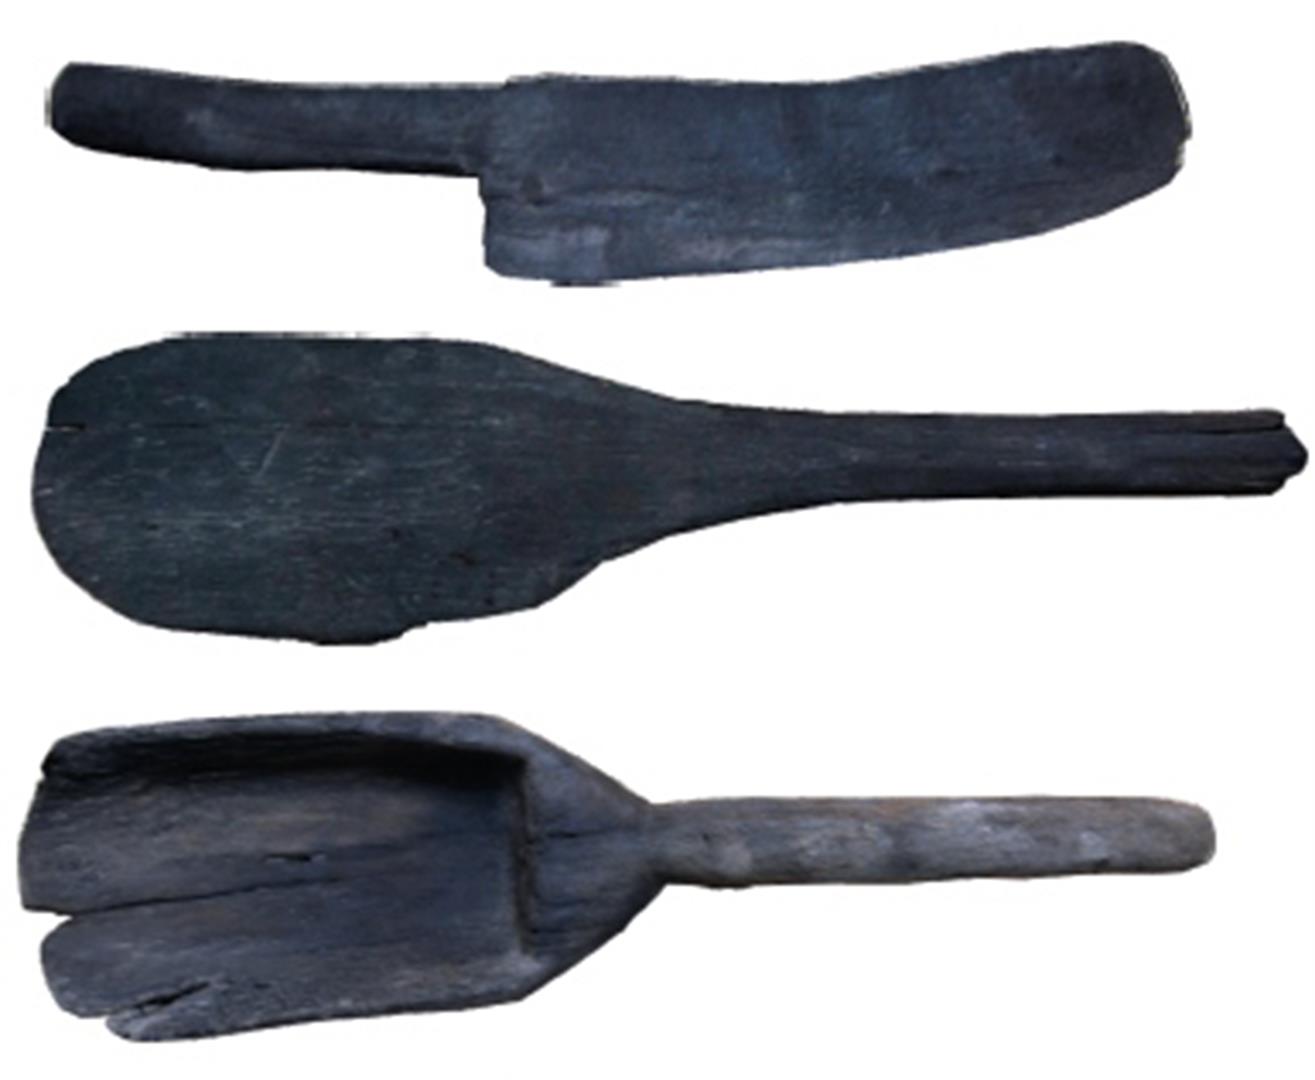 Unelte preistoricedin lemn descoperite în salina de la Ocna Mureş.